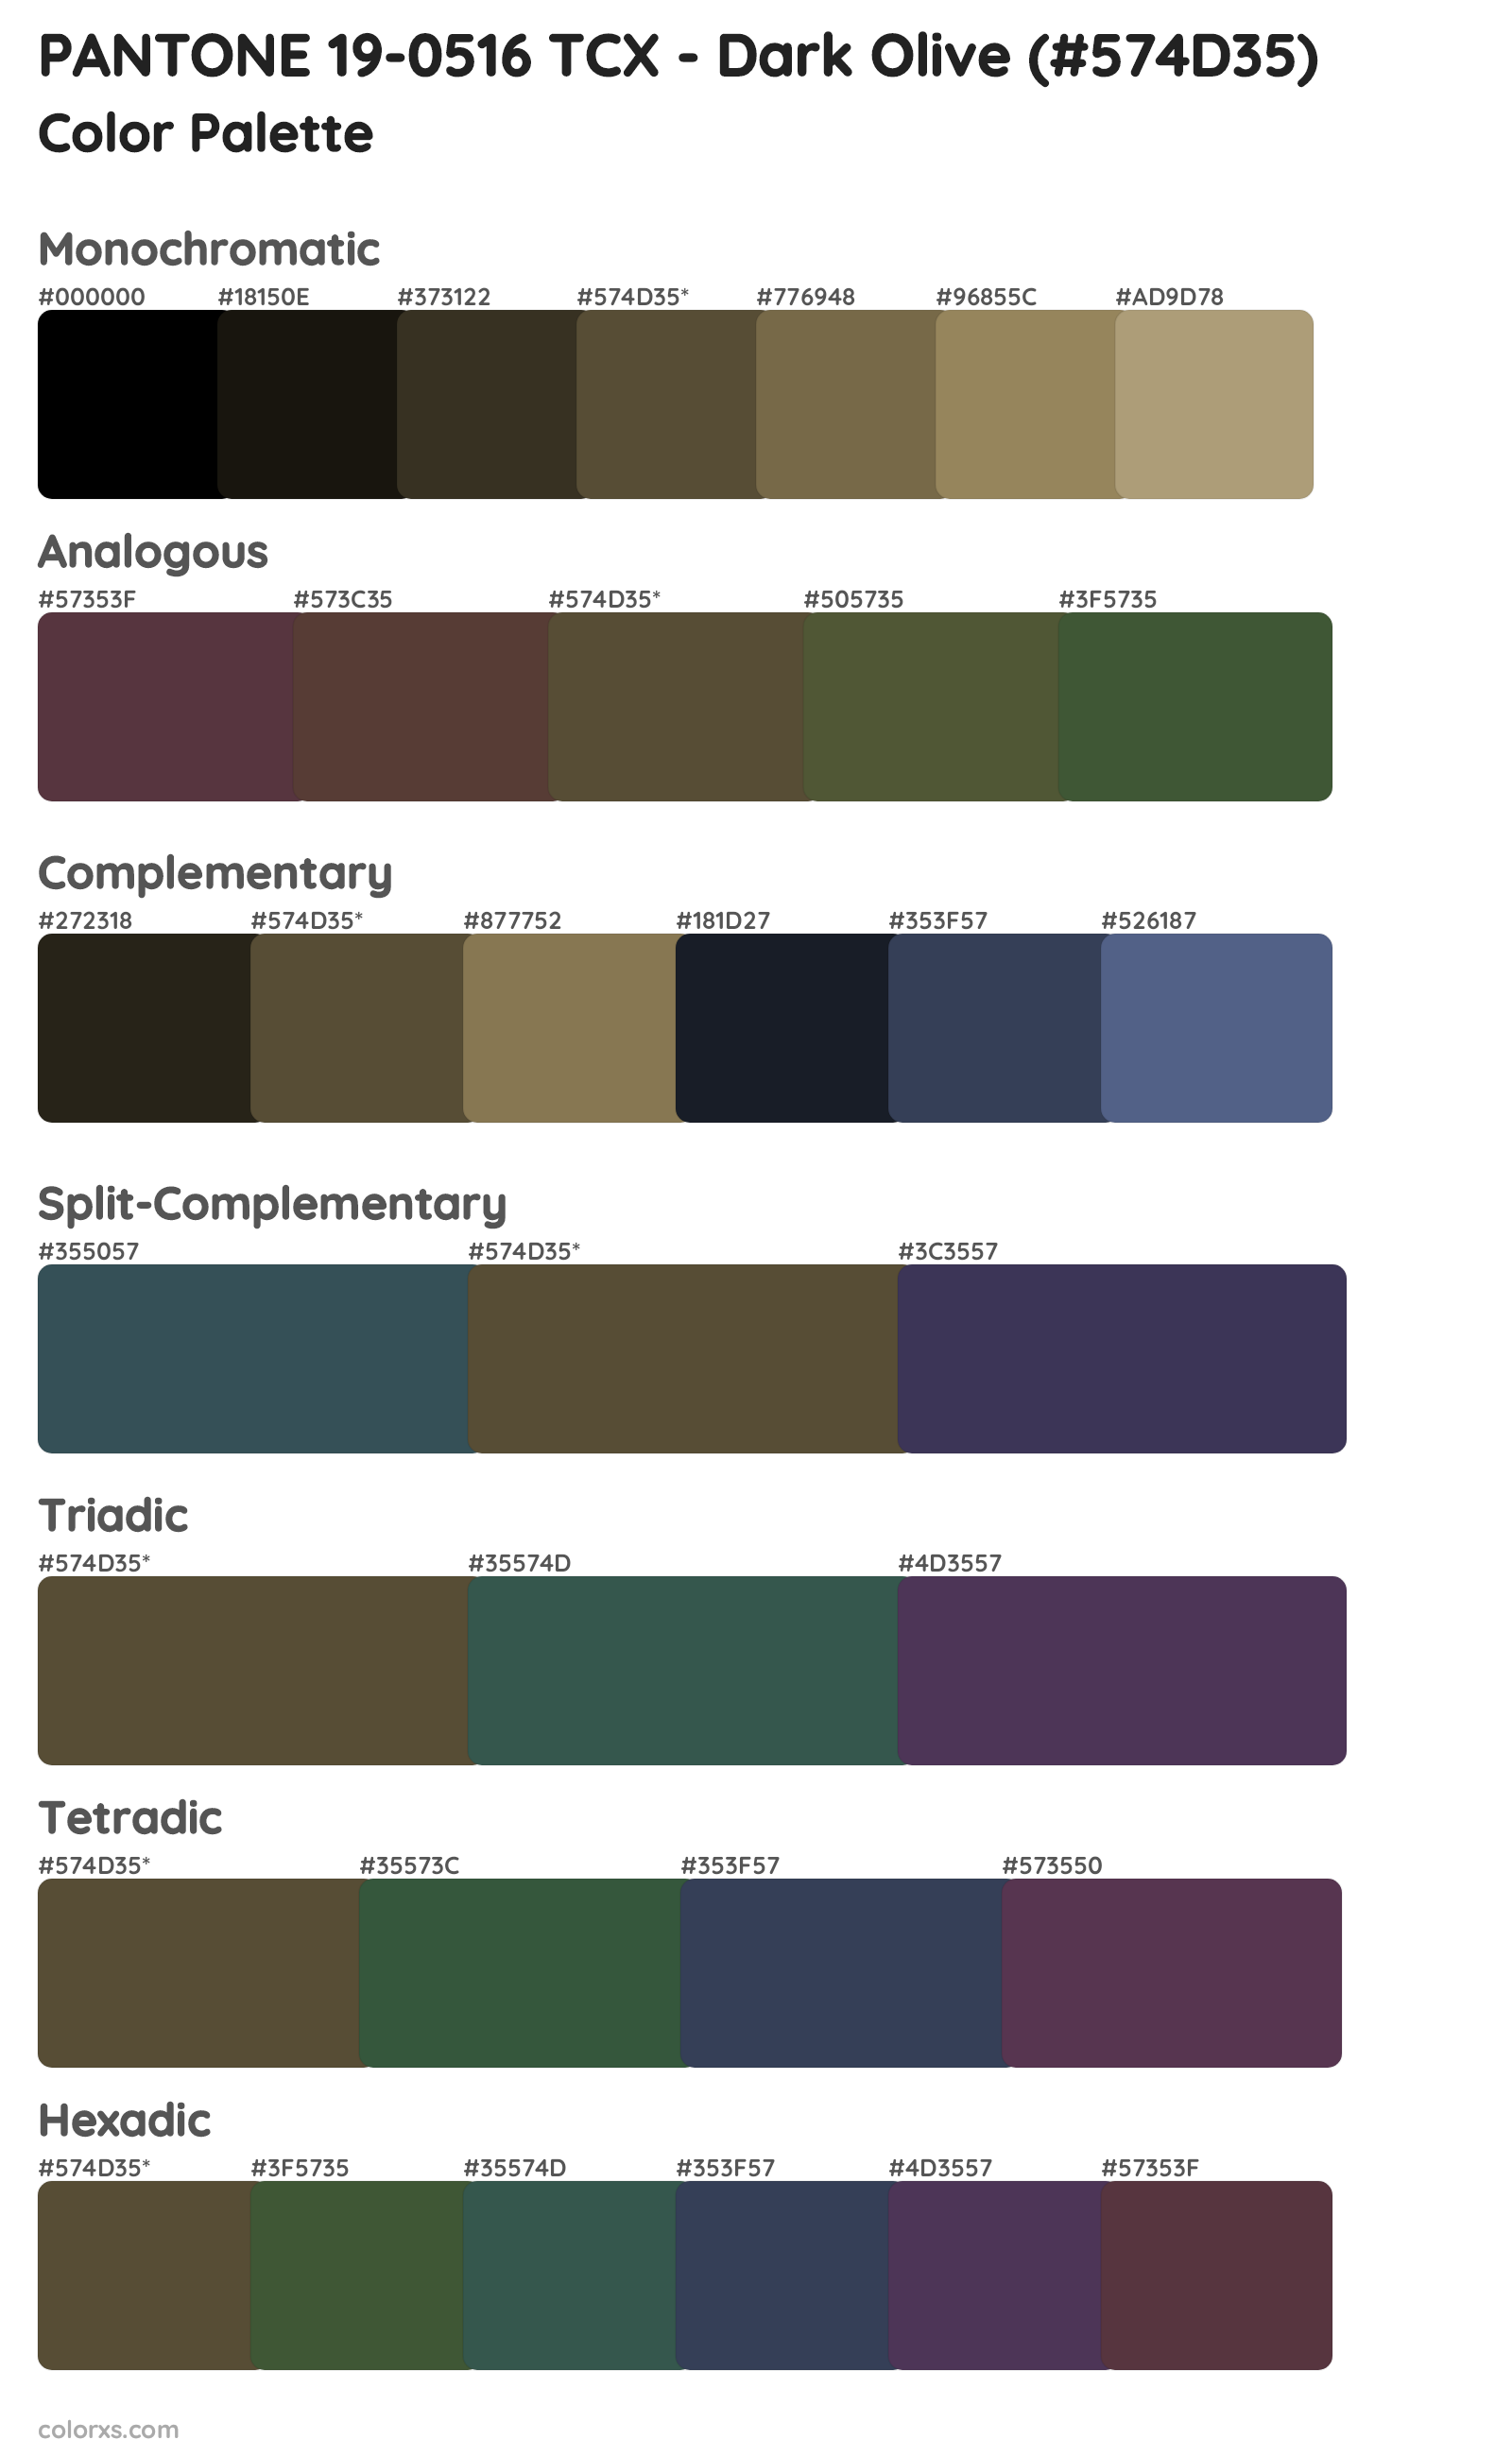 PANTONE 19-0516 TCX - Dark Olive Color Scheme Palettes